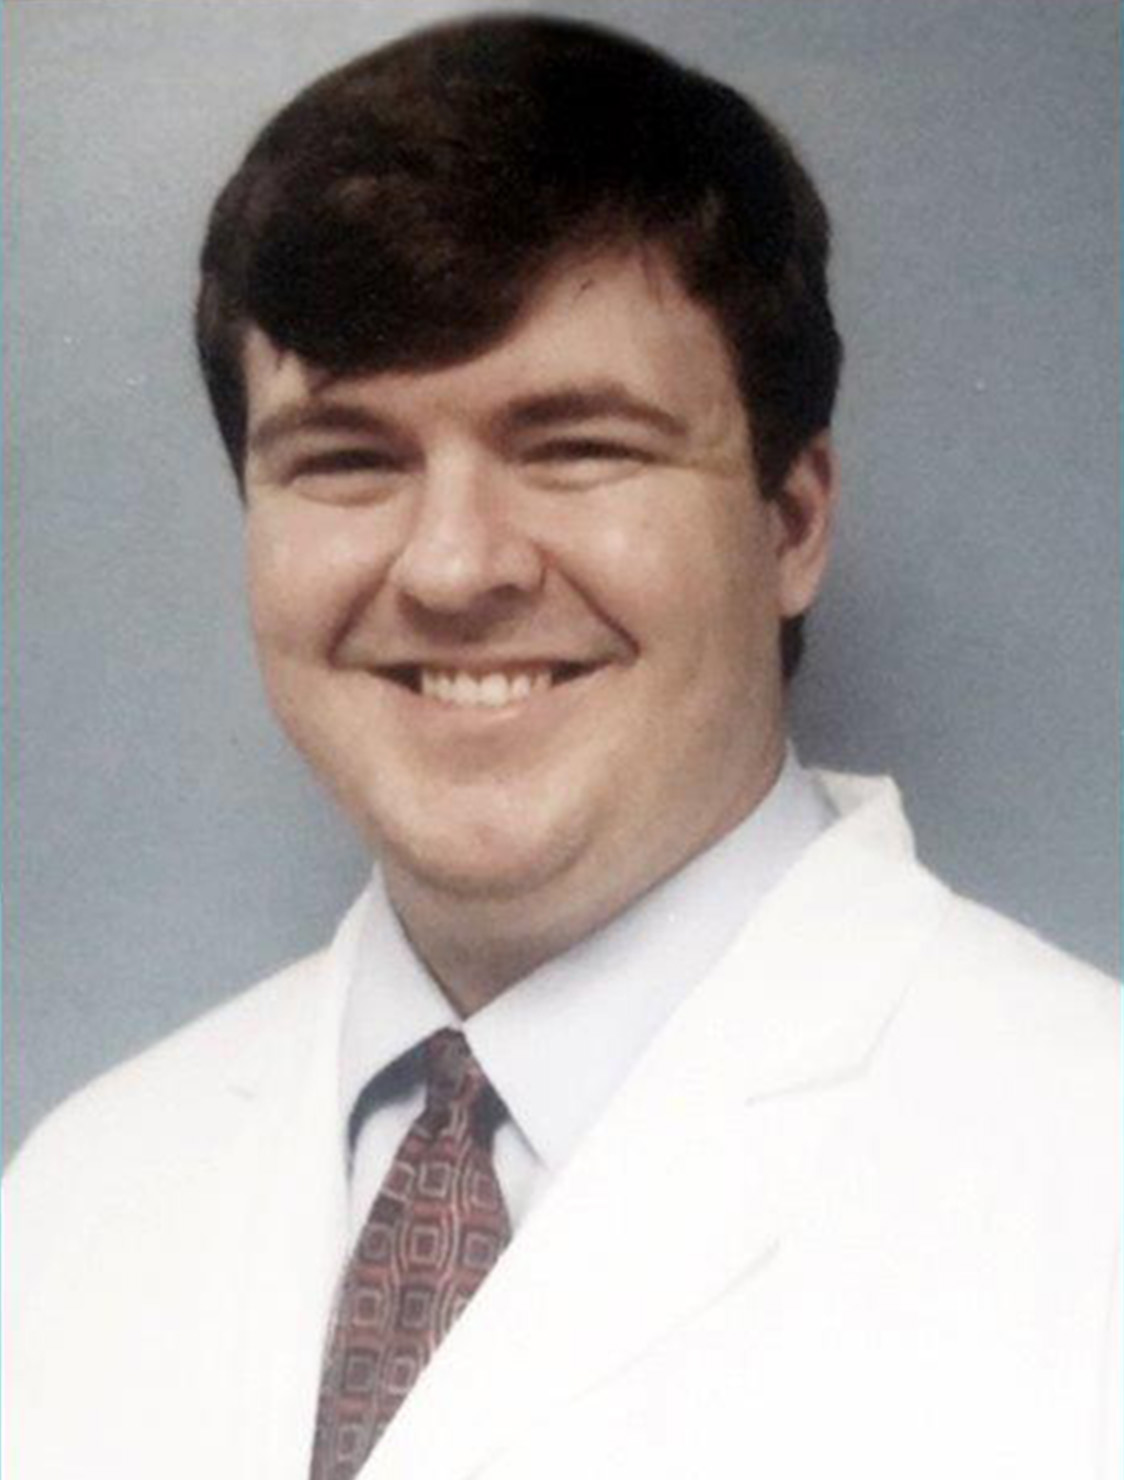 Dr. Kenneth J. Delay, MD photo.